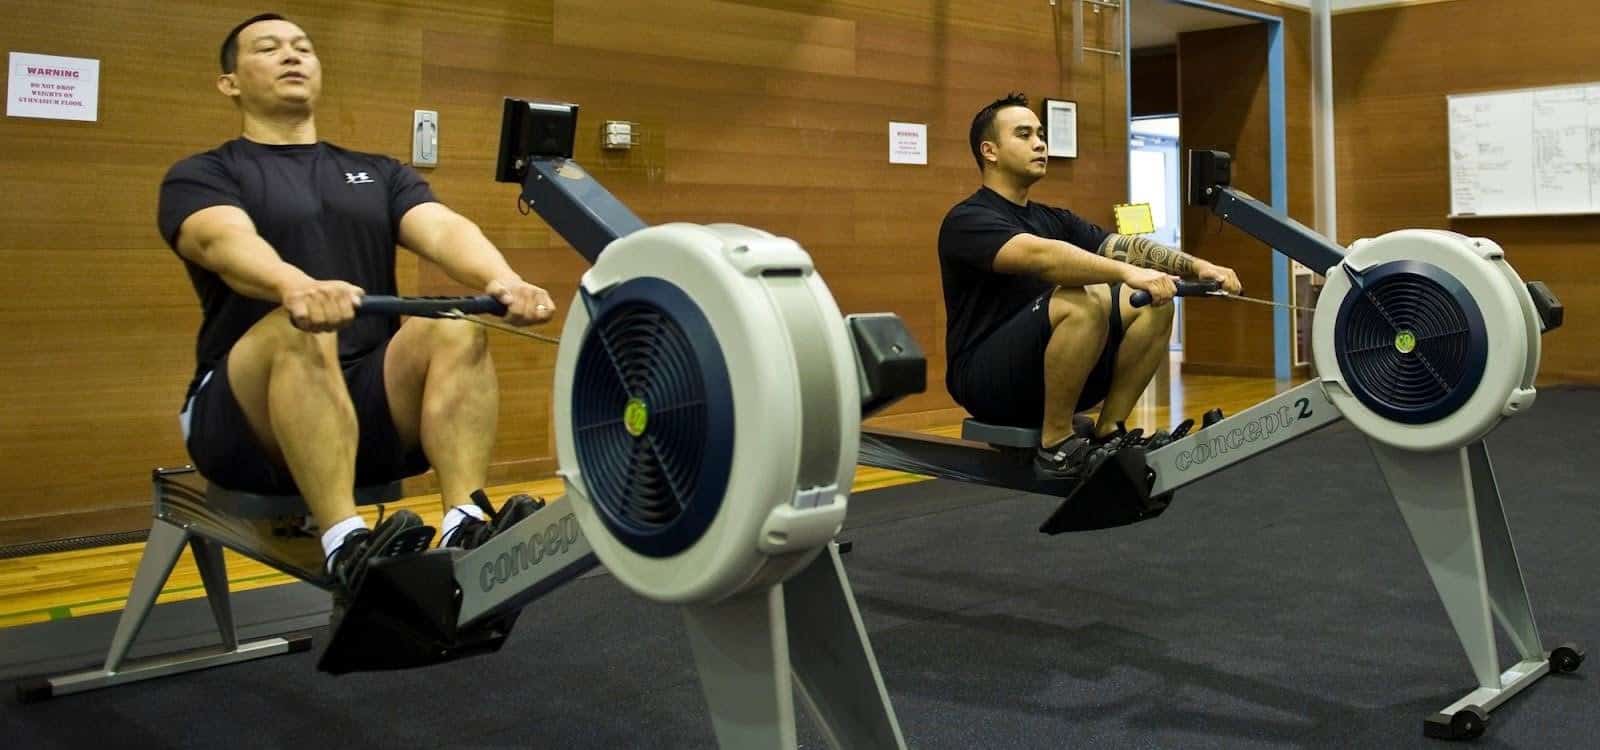 мужчины, тренирующиеся на гребных тренажерах, на какие мышцы воздействует гребной тренажер? Какие мышцы задействует гребной тренажер?